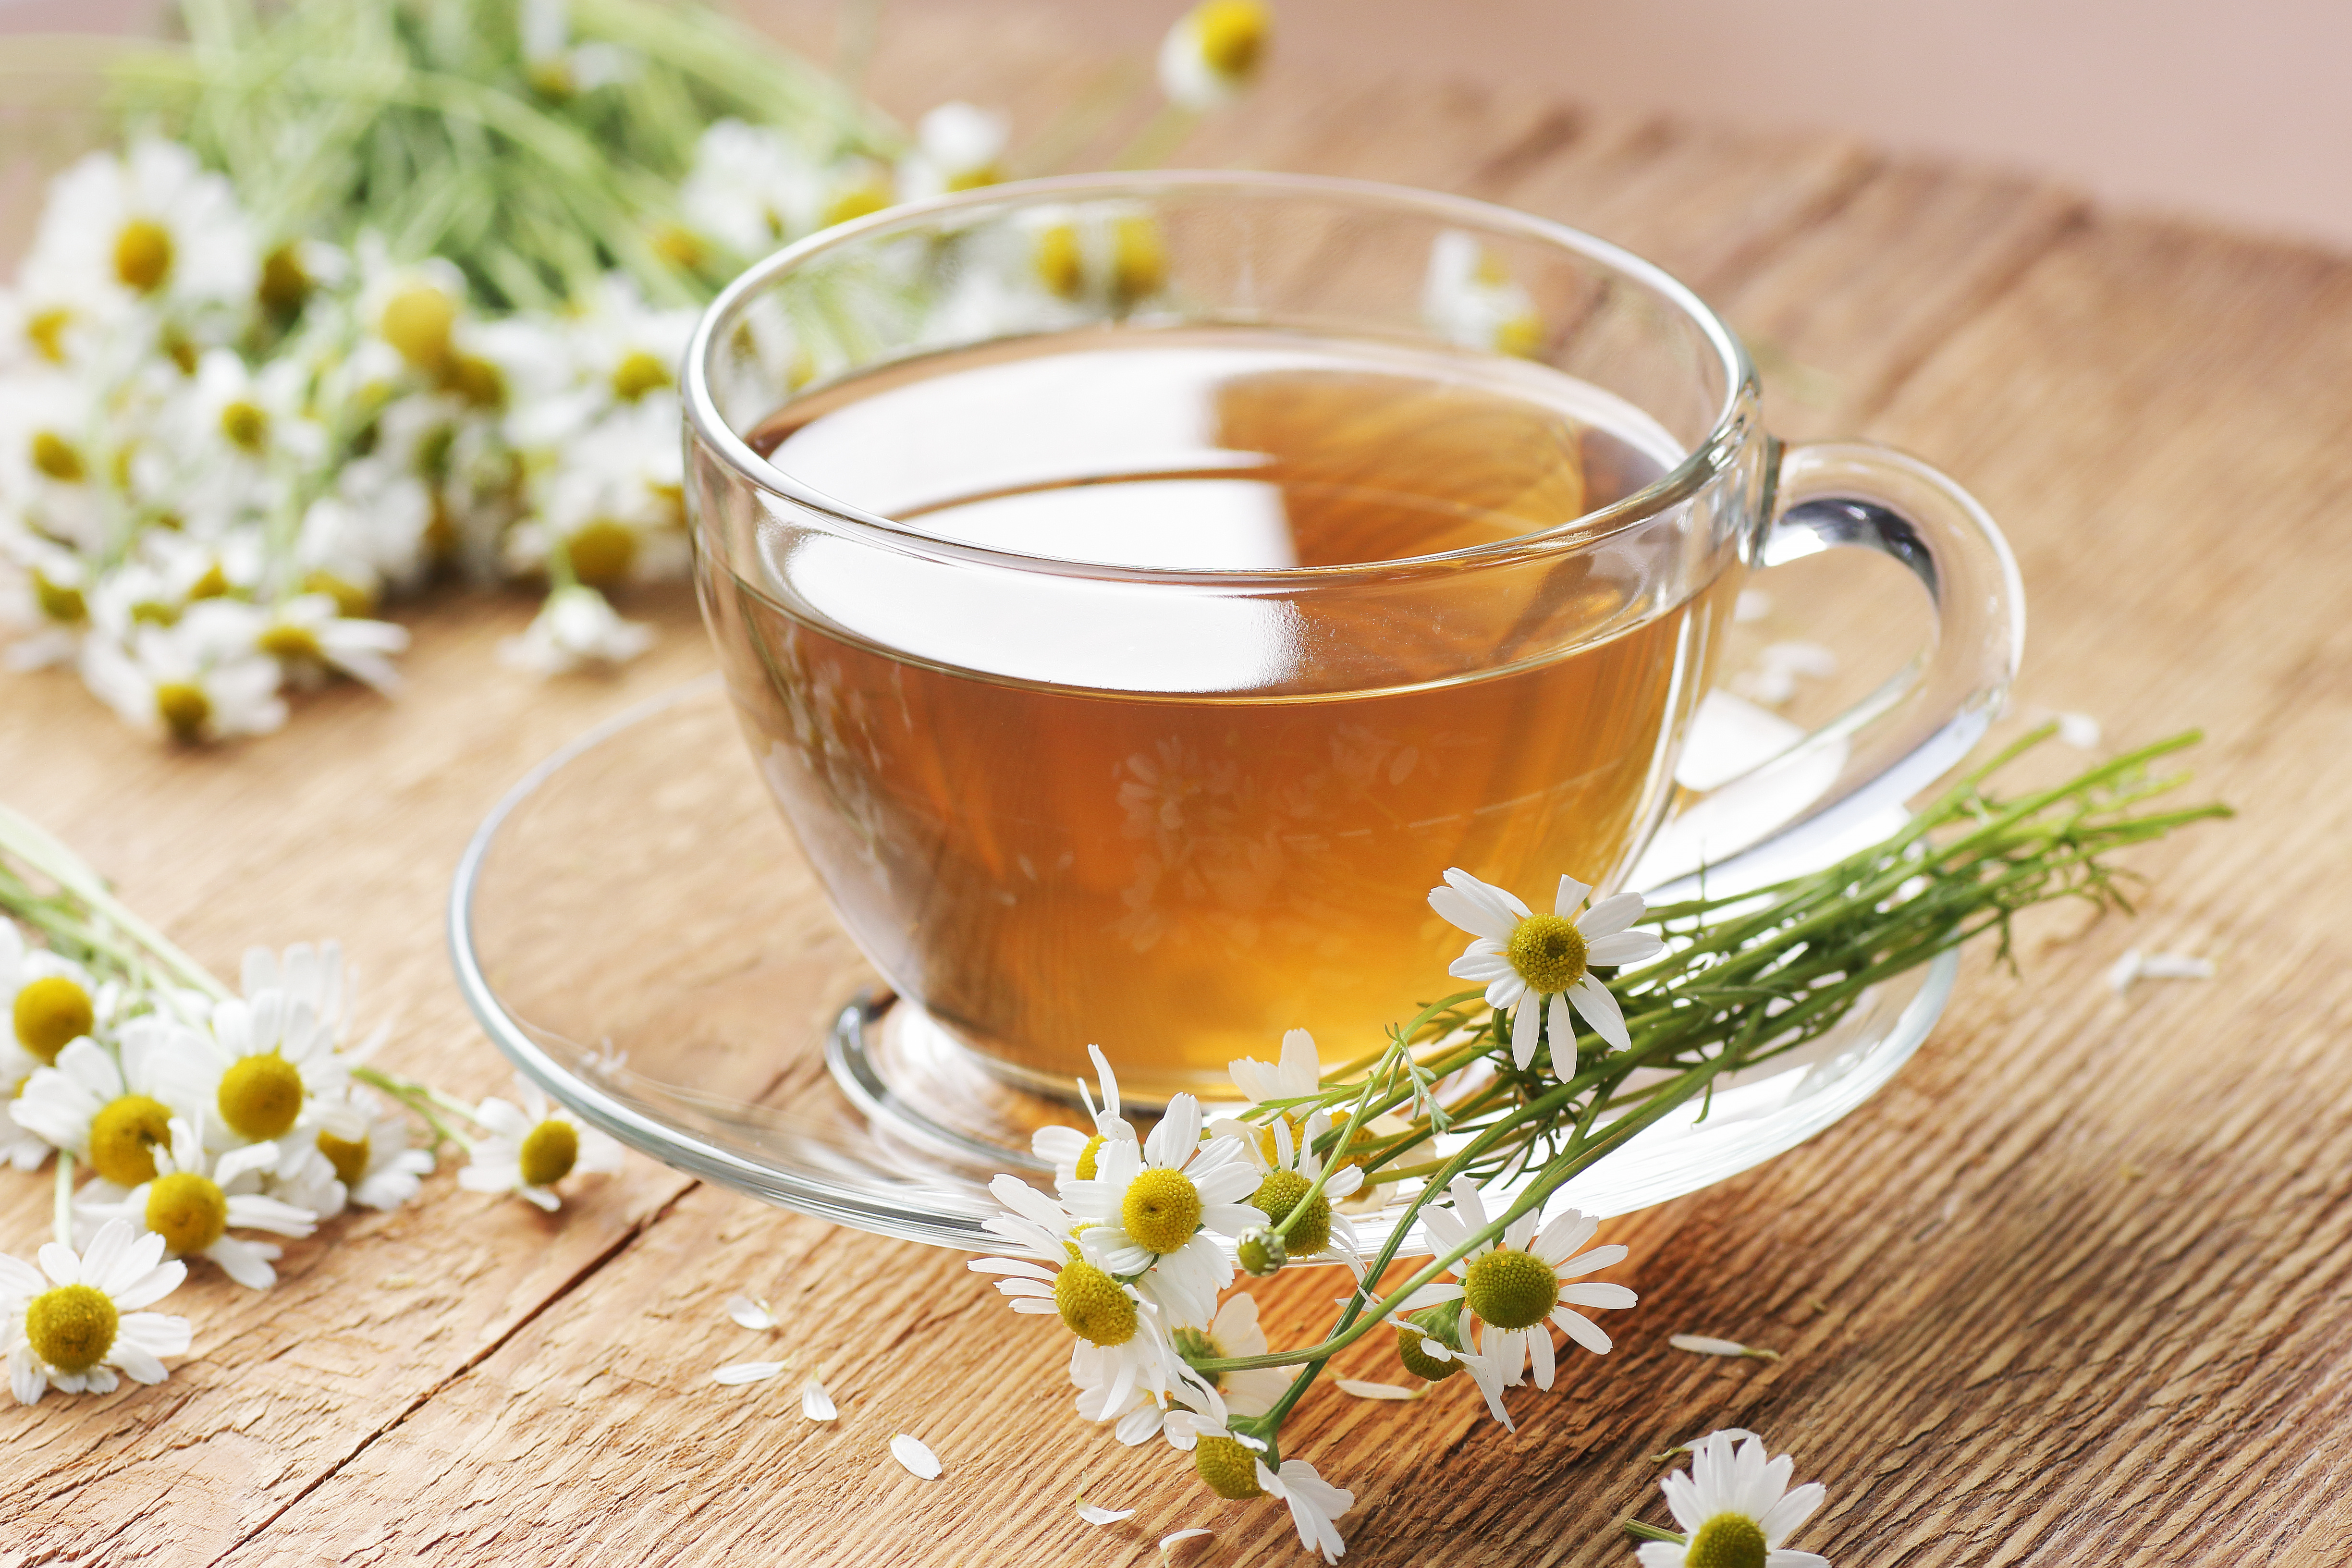 Les remèdes naturels pour soigner un rhume offrent une approche douce et holistique pour soulager les symptômes et accélérer la guérison. © teatian, Adobe Stock